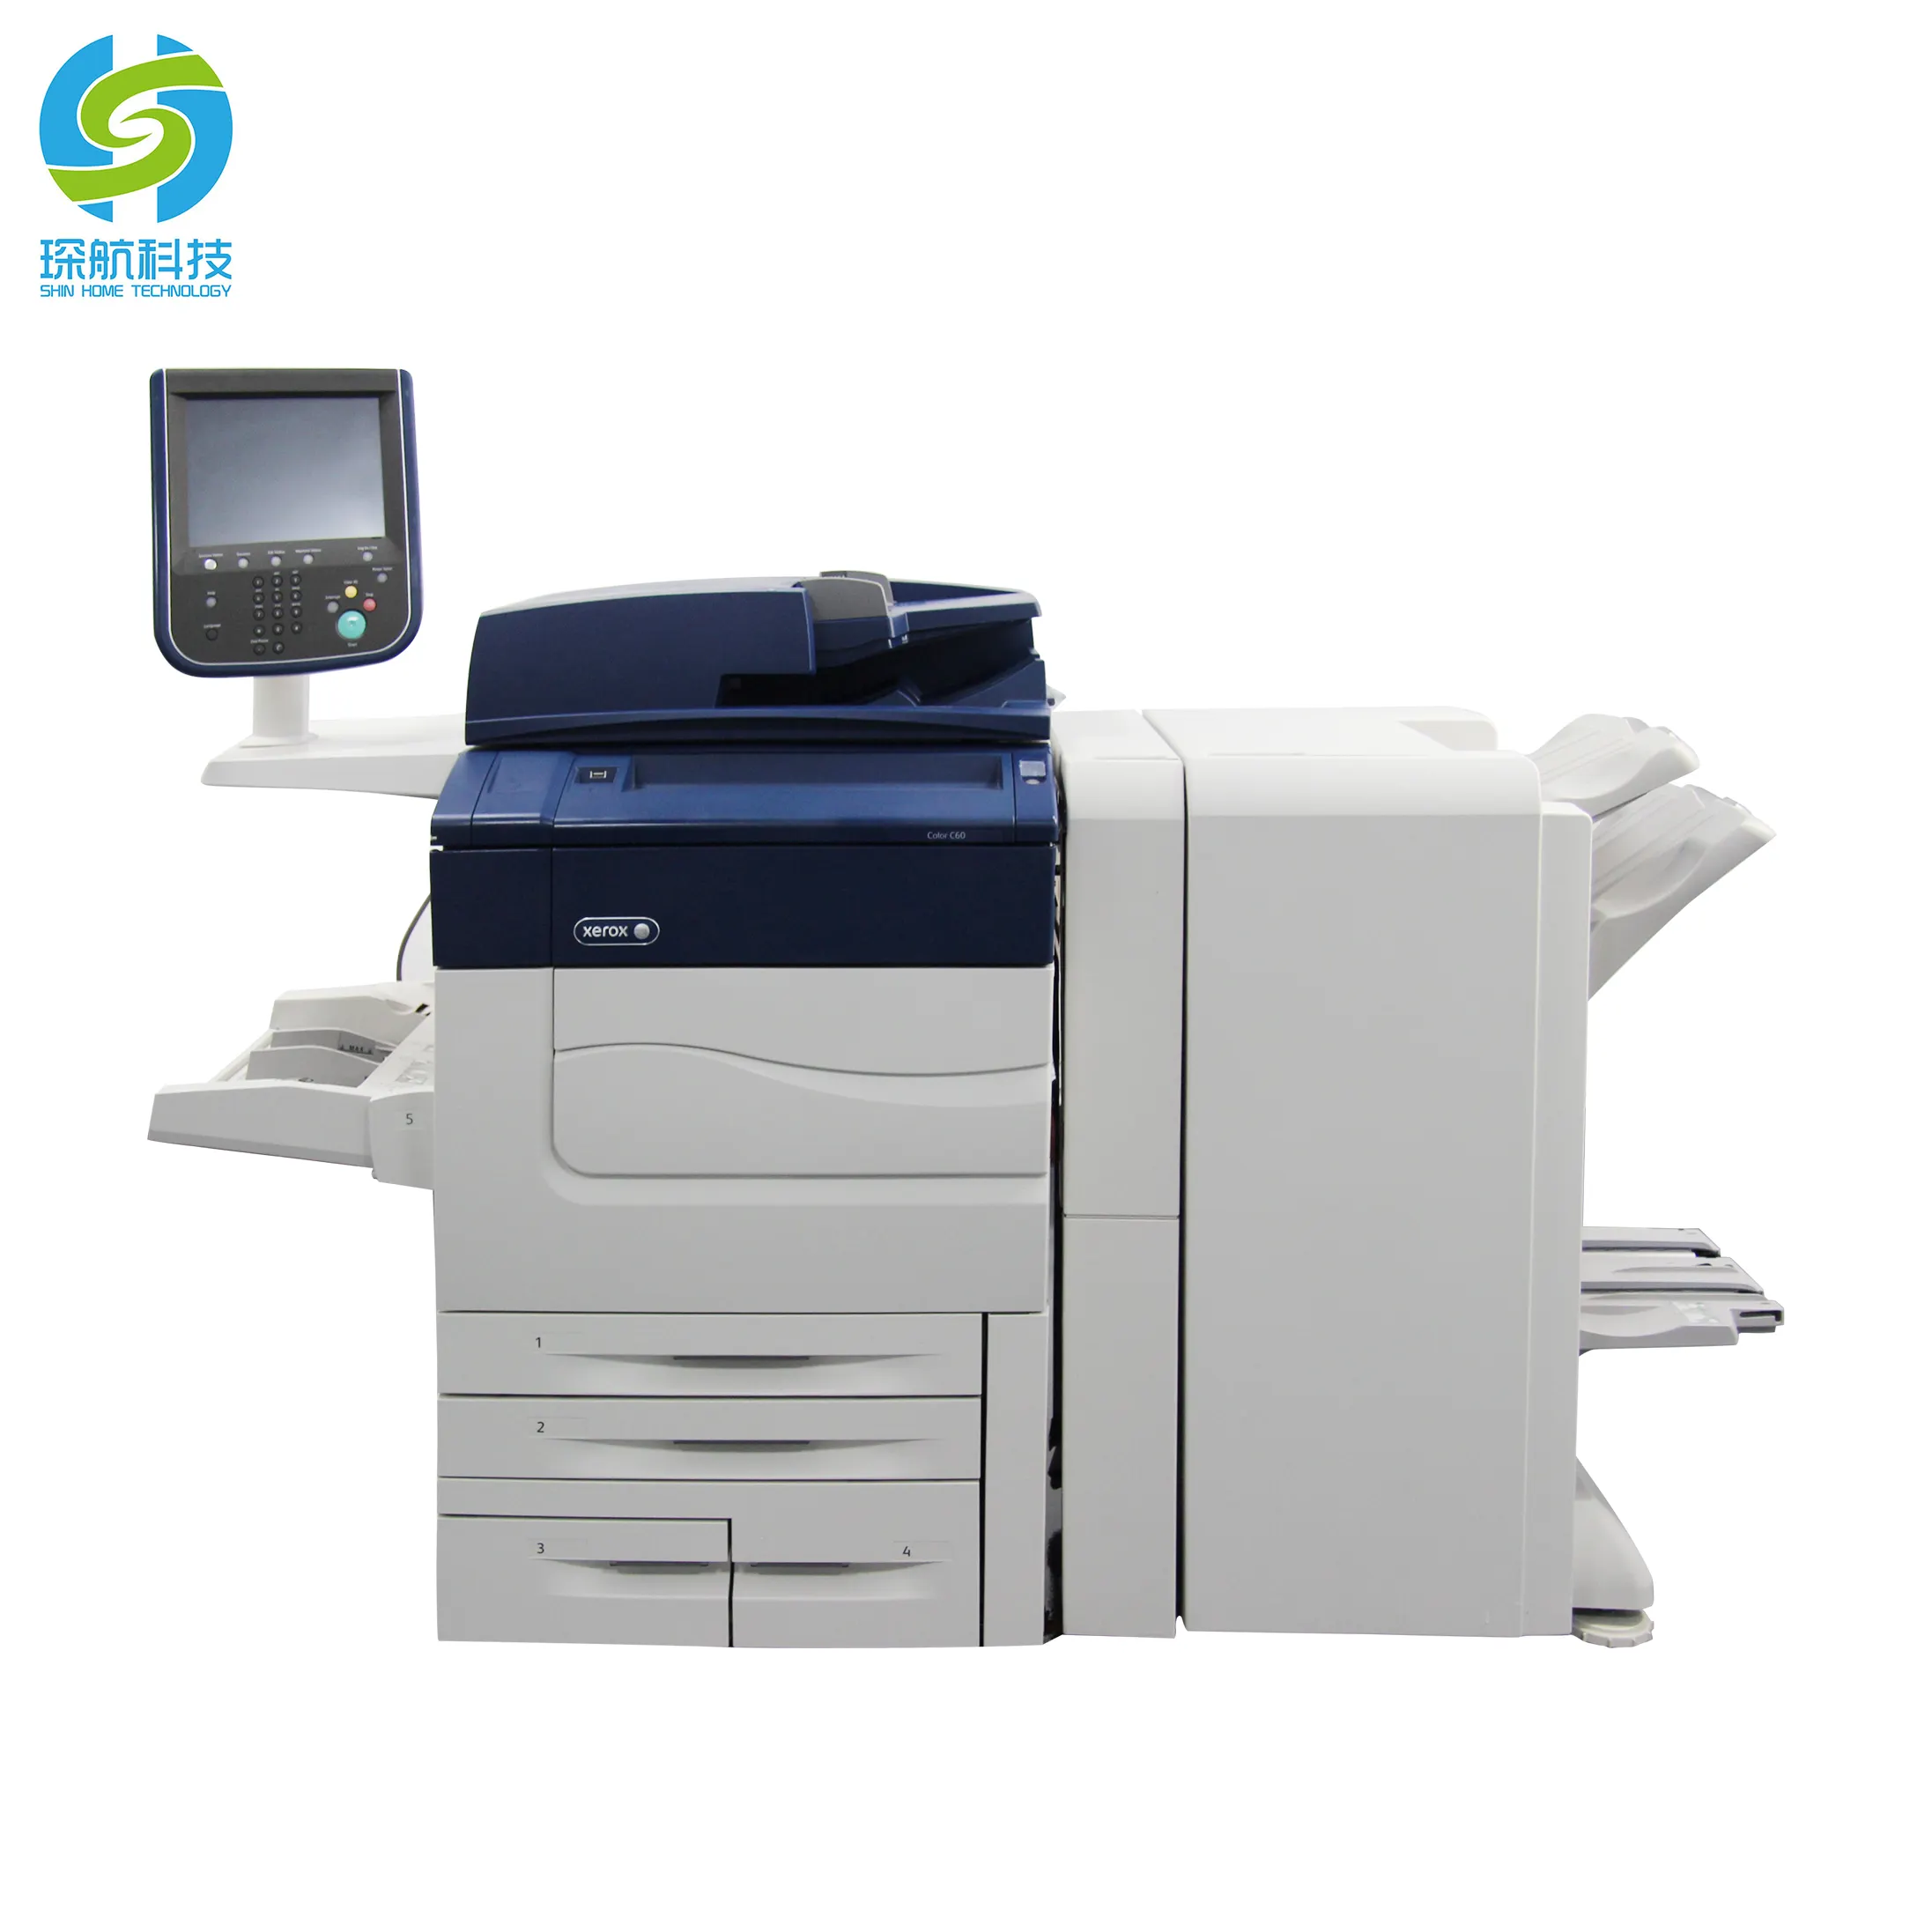 Yenilenmiş A3 yazıcı renkli fotokopi makinesi Xerox C60 C70 kullanılan fotokopi ve yazıcı fotokopi makinesi